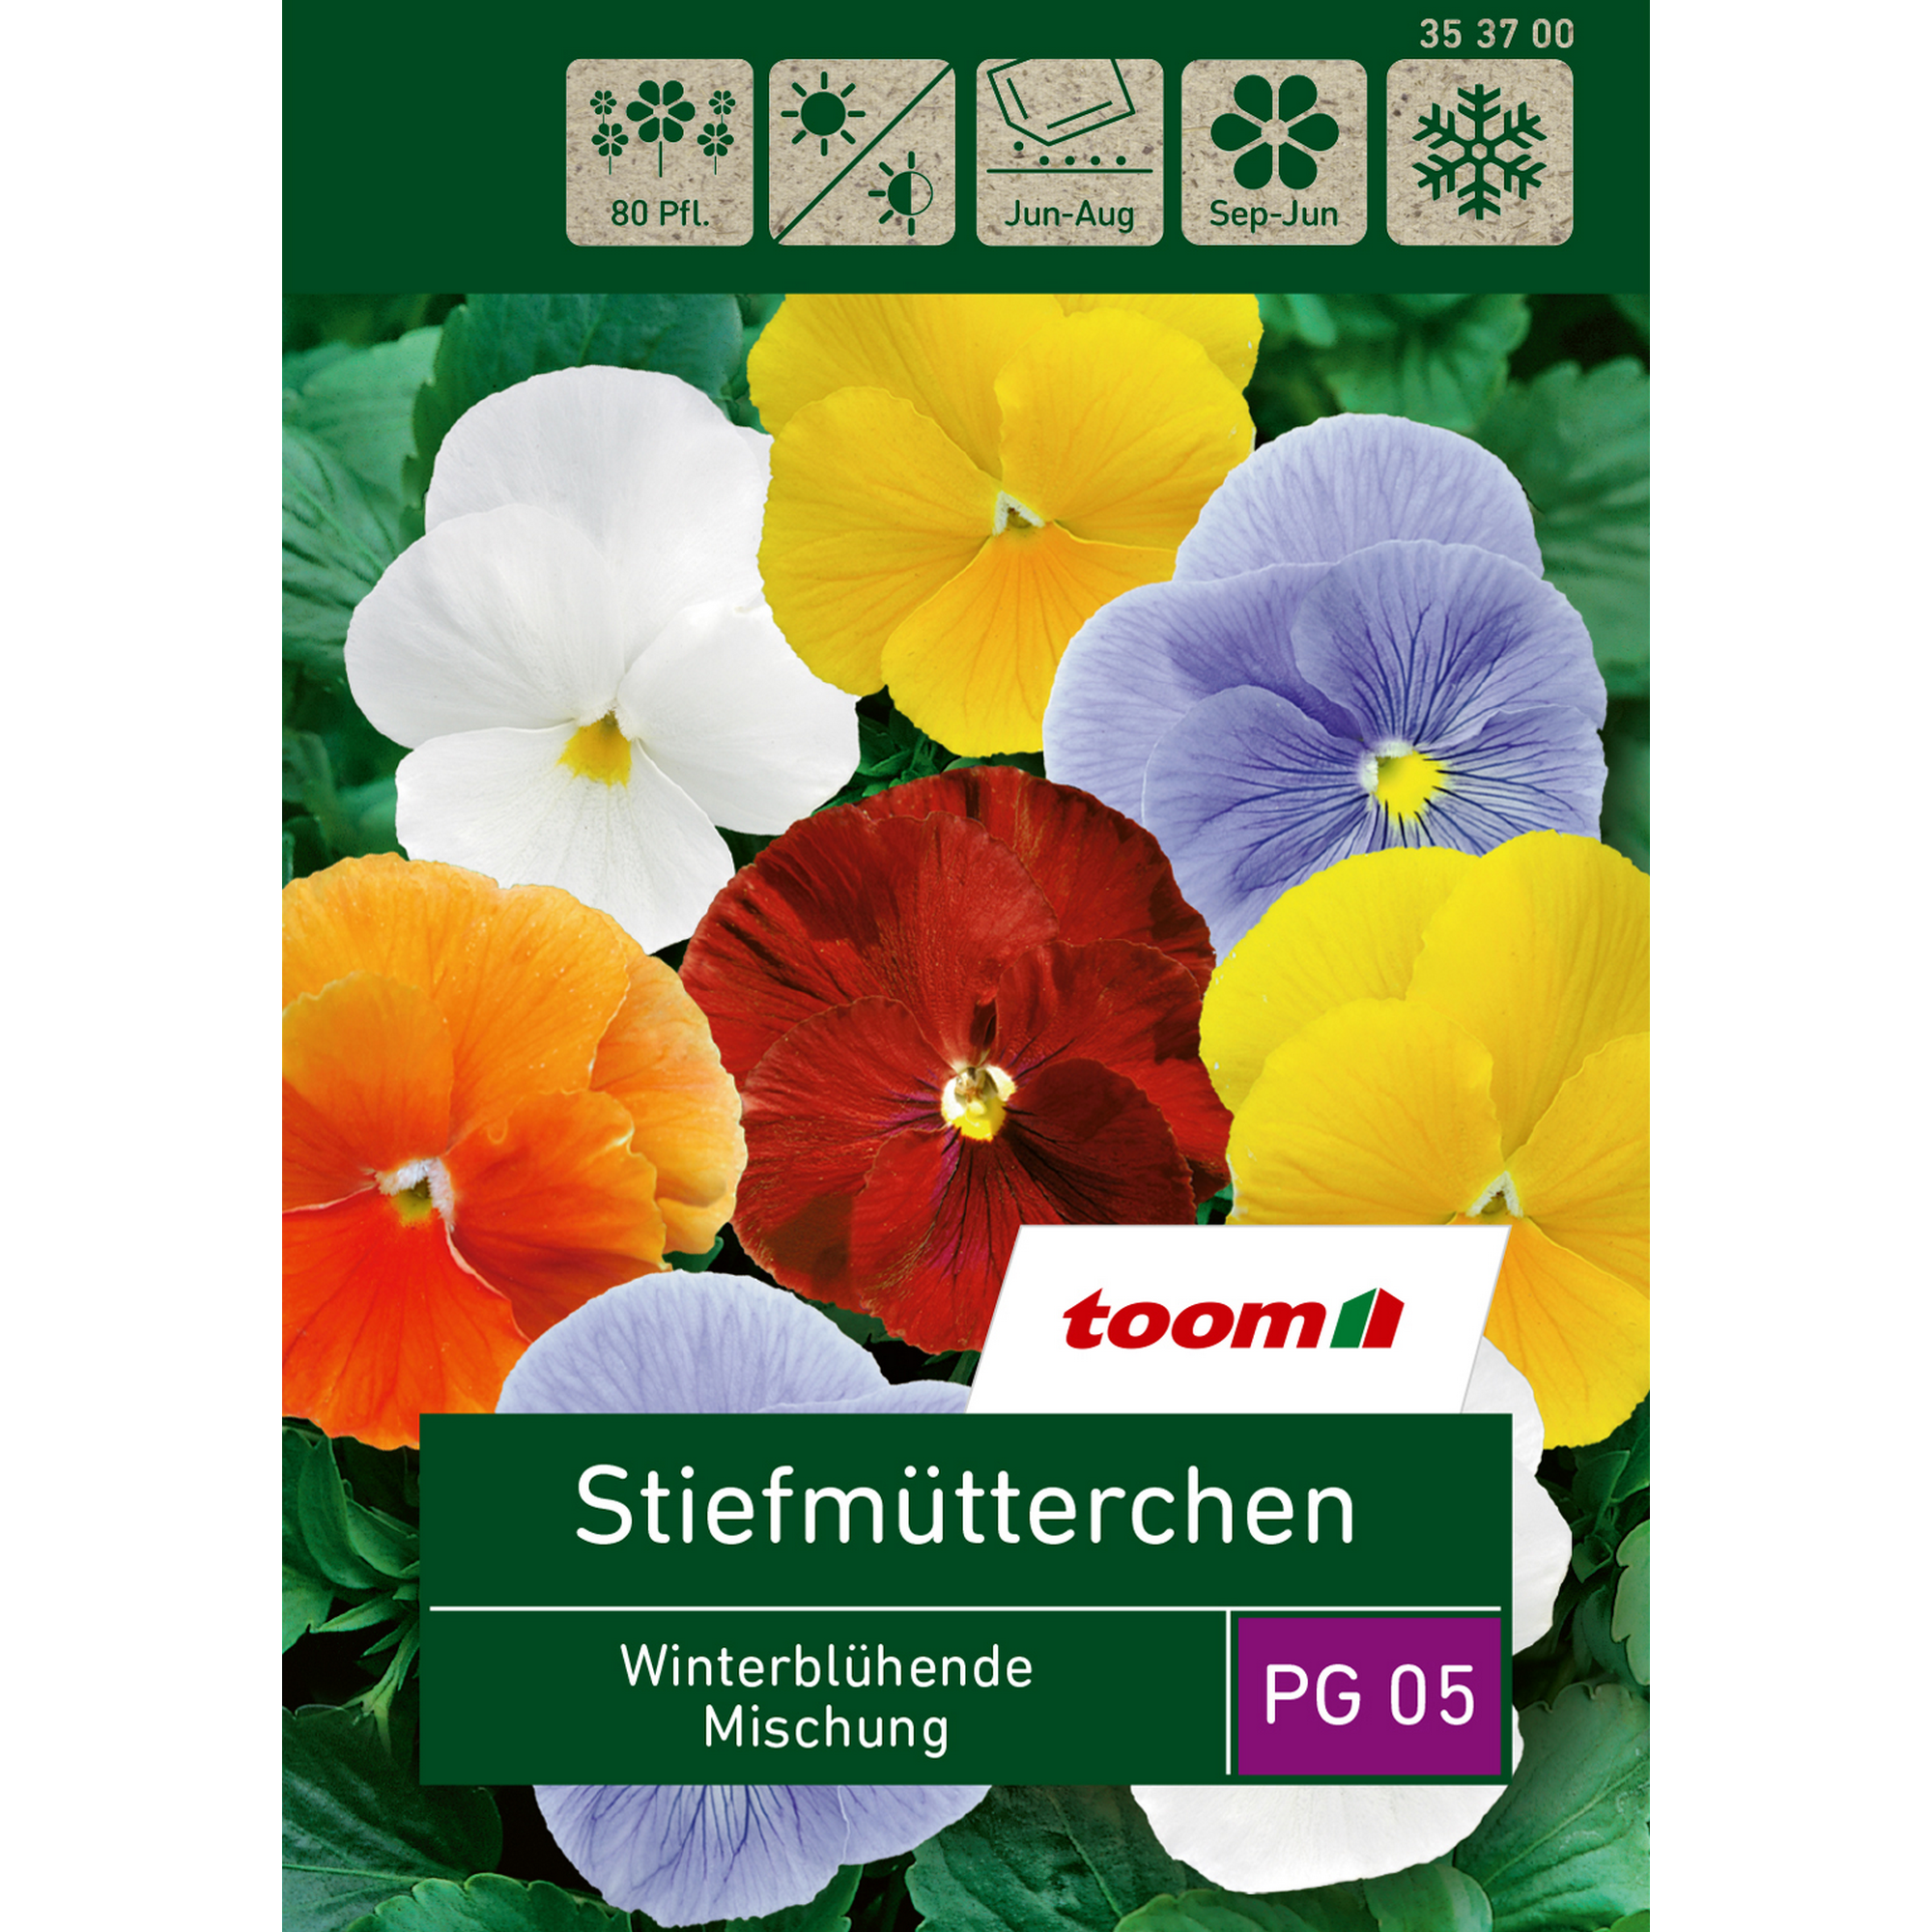 Stiefmütterchen 'Winterblühende Mischung' + product picture